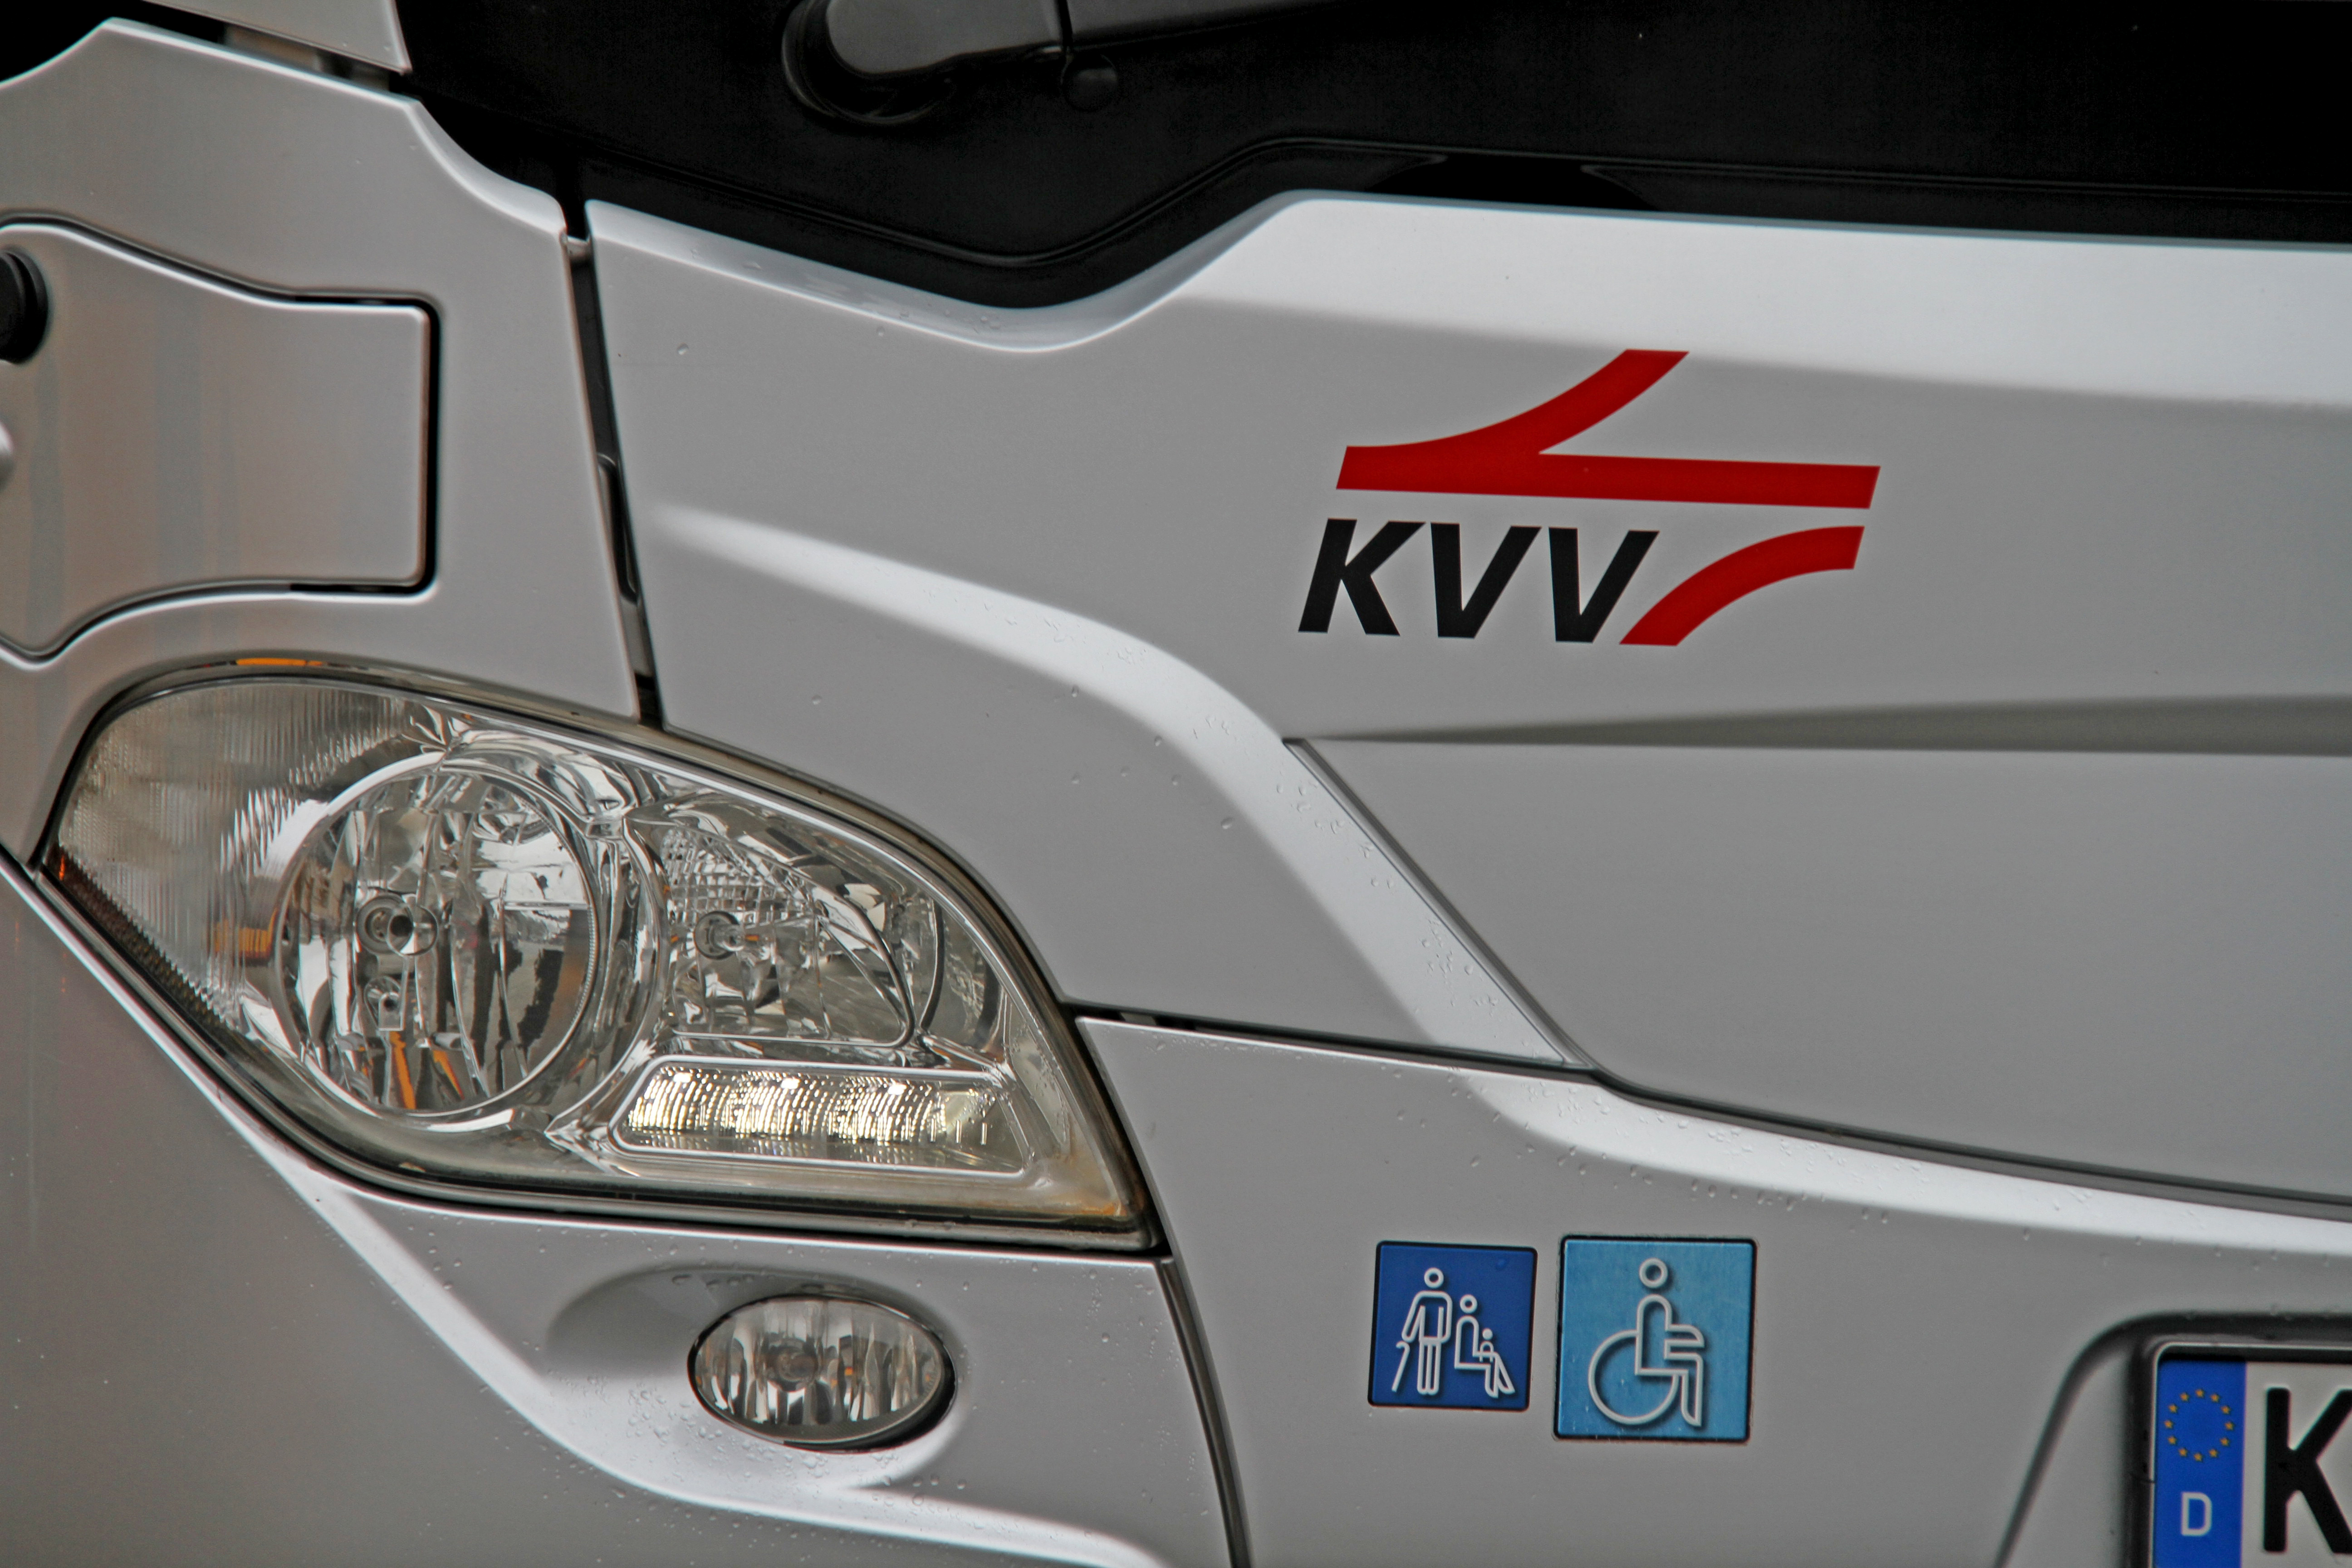 Scheinwerfer eines silberfarbenen Busses mit rotem KVV-Logo